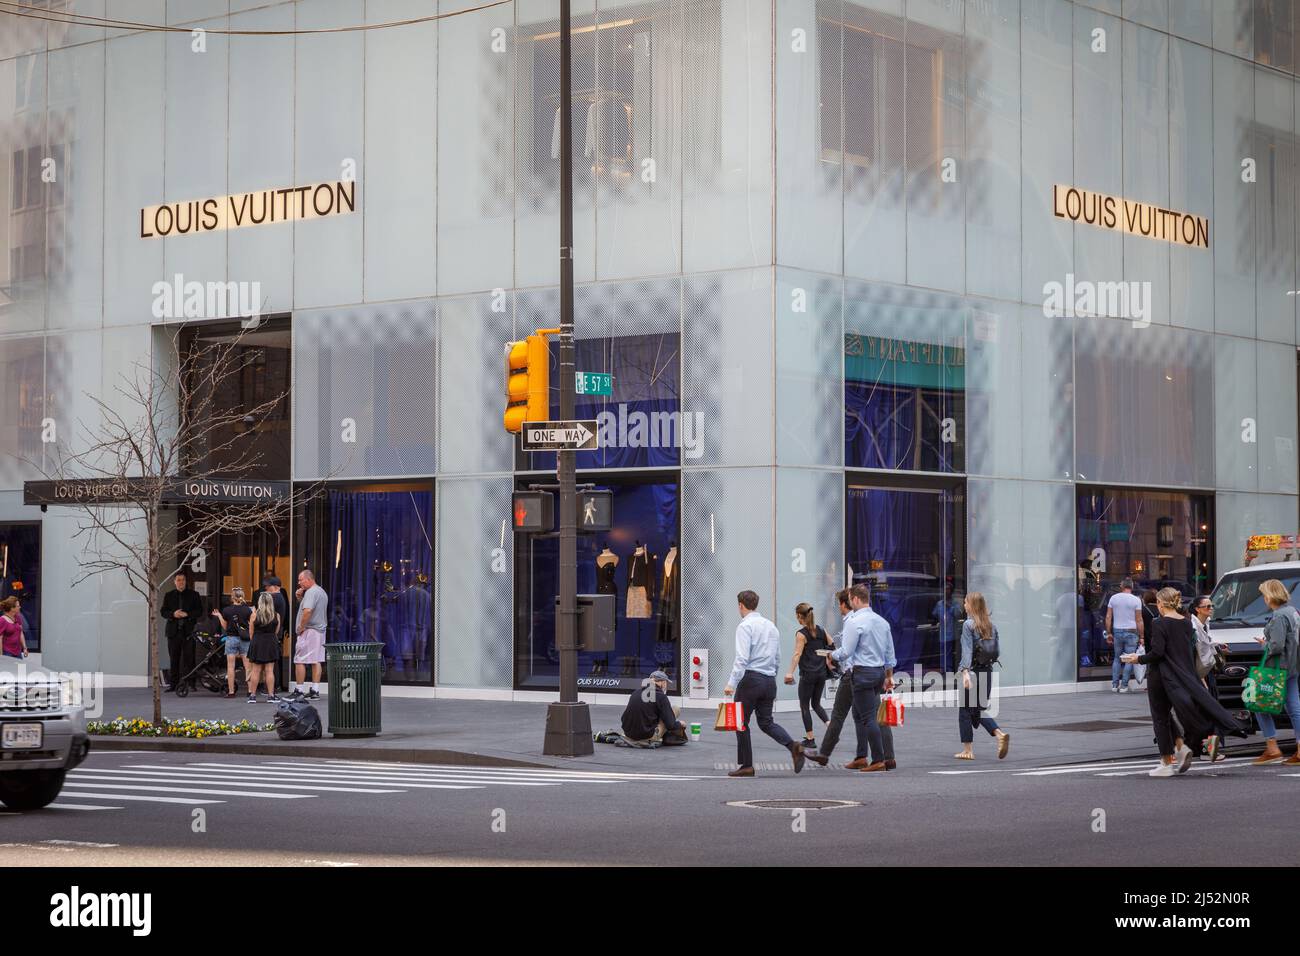 Louis Vuitton, maison de luxe française, Fifth Avenue, New York, NY, Etats-Unis. Banque D'Images